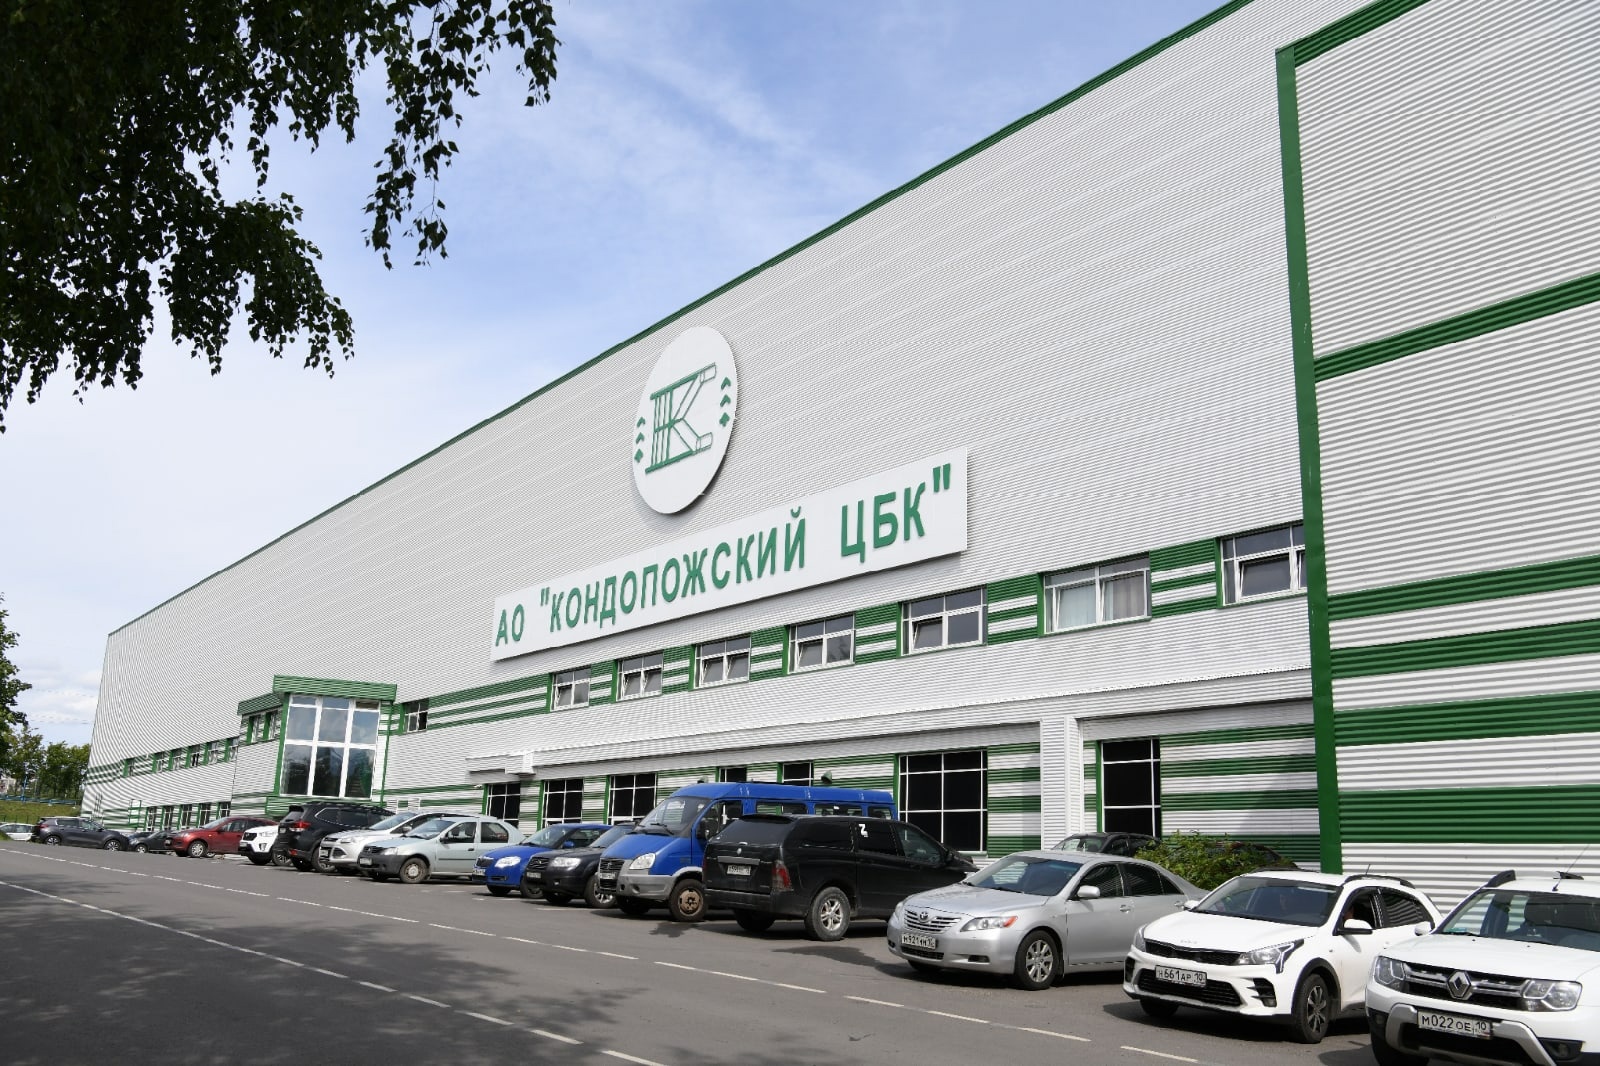 Кондопожский ЦБК планирует первым в России наладить выпуск растворимой целлюлозы